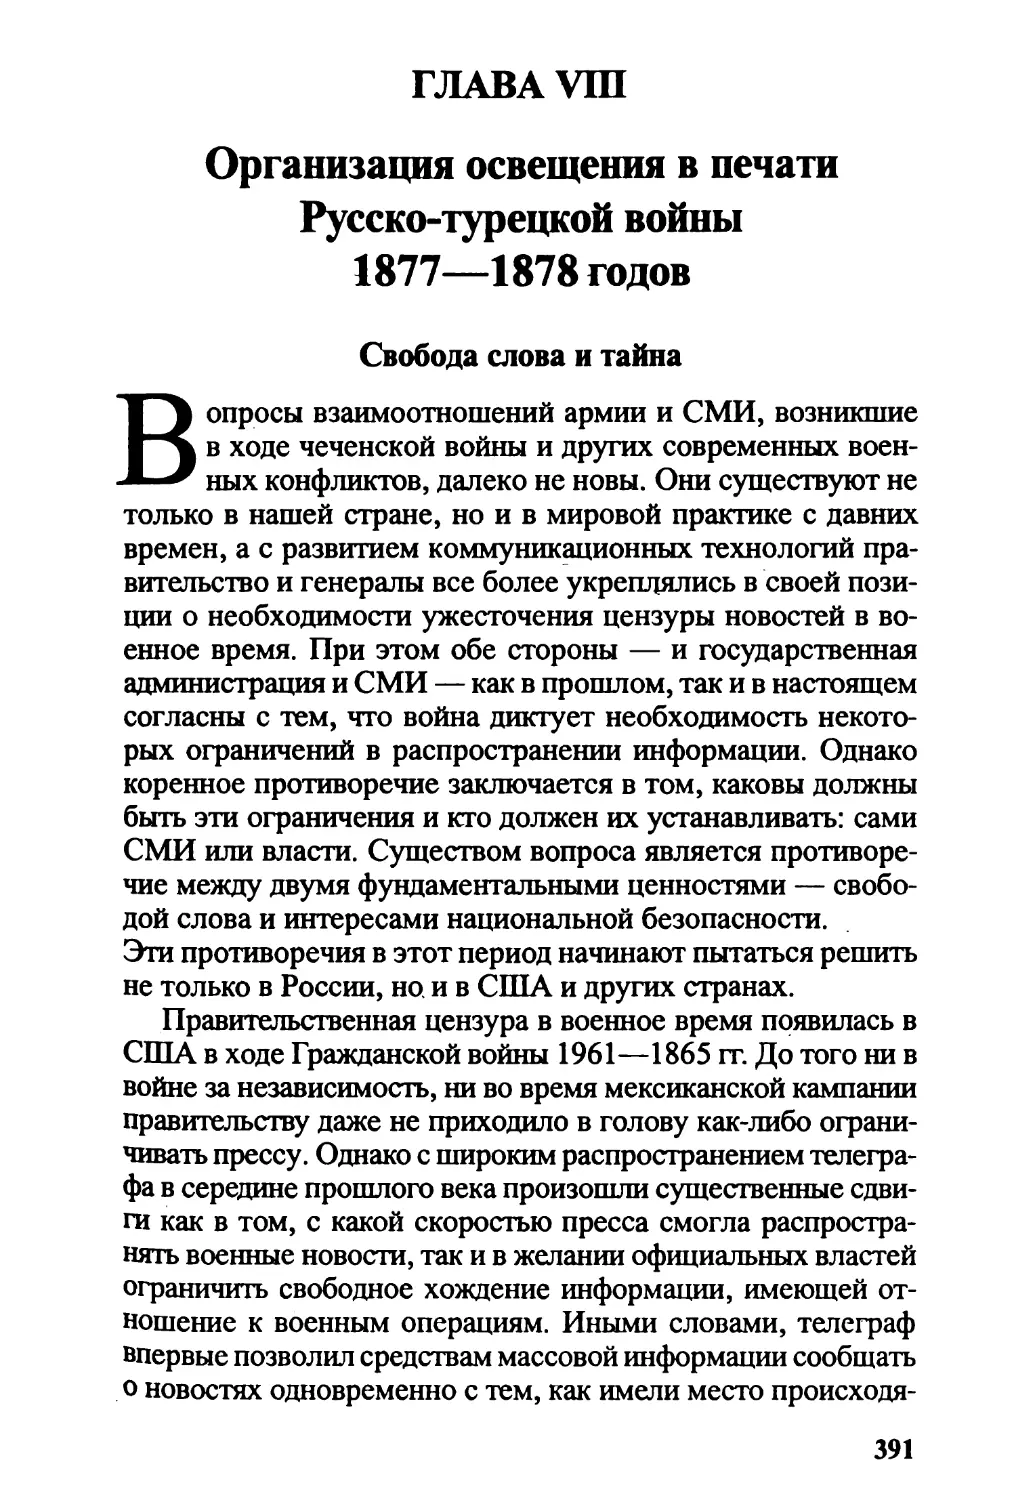 Глава VIII. Организация освещения в печати Русско-турецкой войны 1877—1878 годов